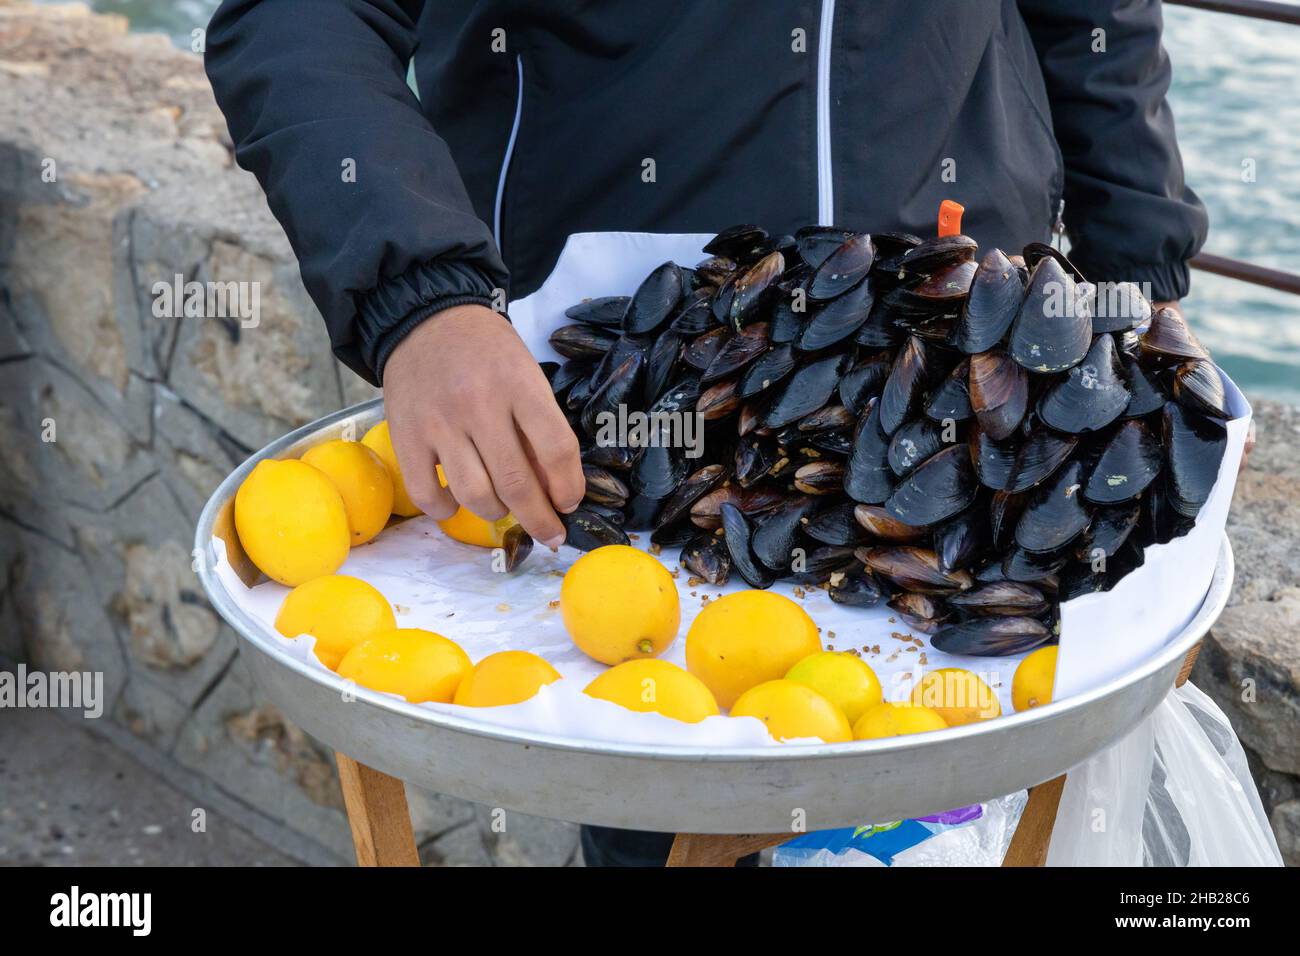 Moules farcies de style turc appelées sur le banc pour la vente avec un morceau de citron, CAN stock photo Midye dolma, moules farcies nourriture de mer turque. Banque D'Images